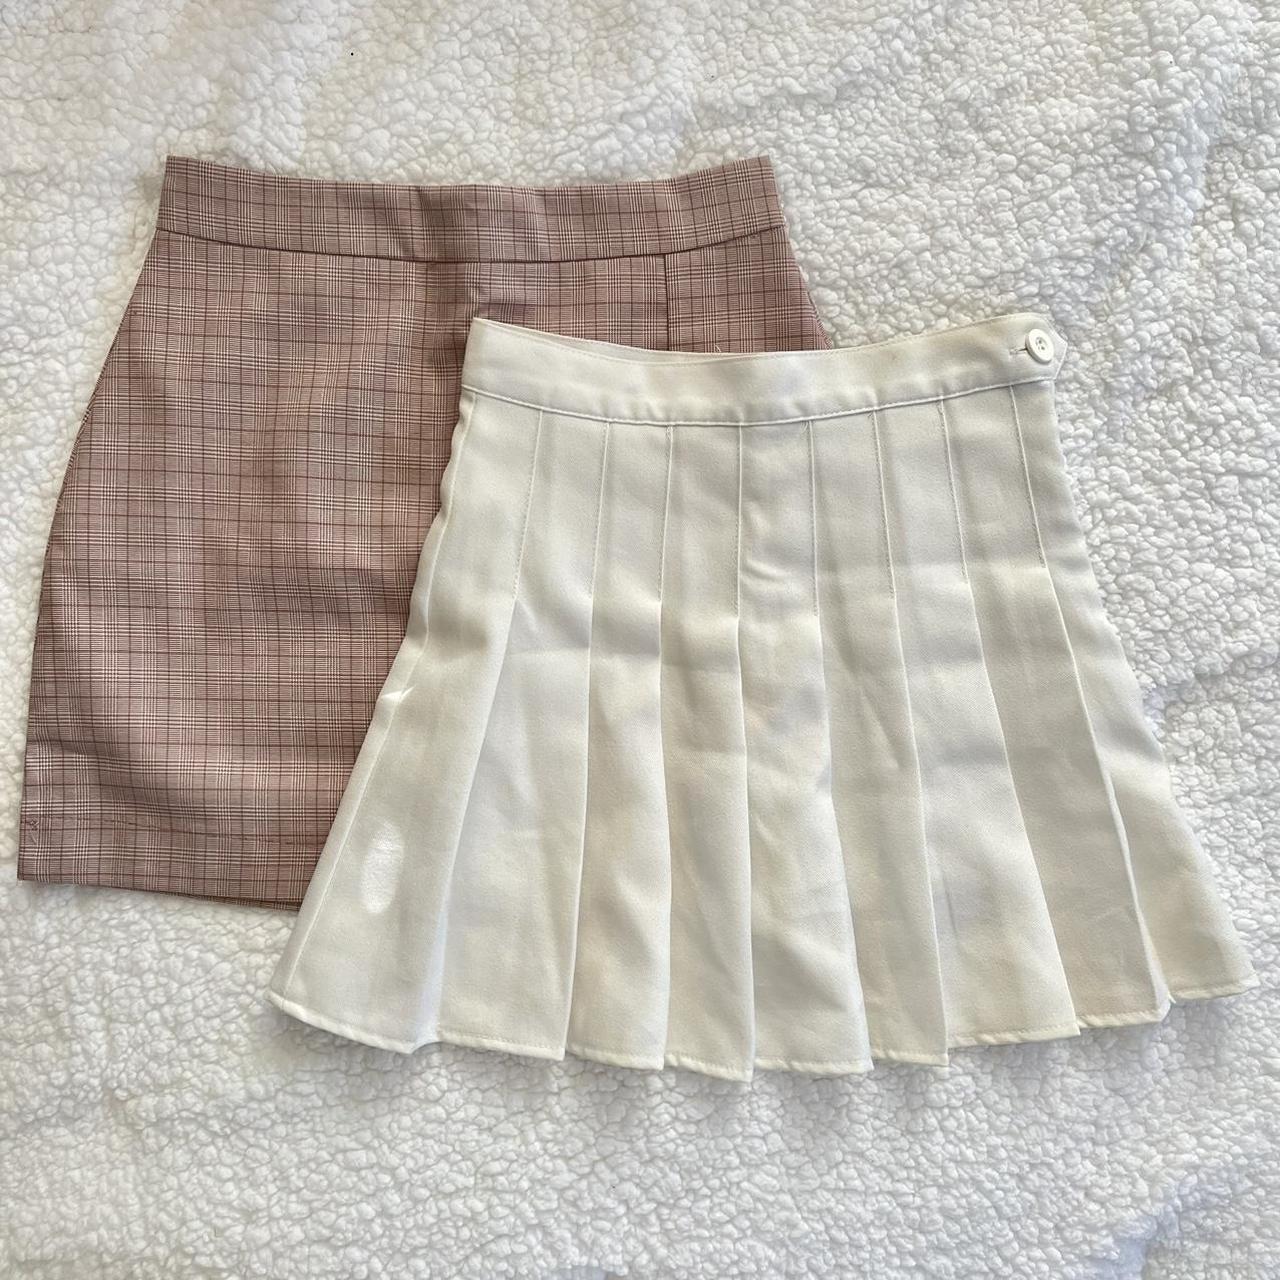 Stylenanda Women's White and Pink Skirt